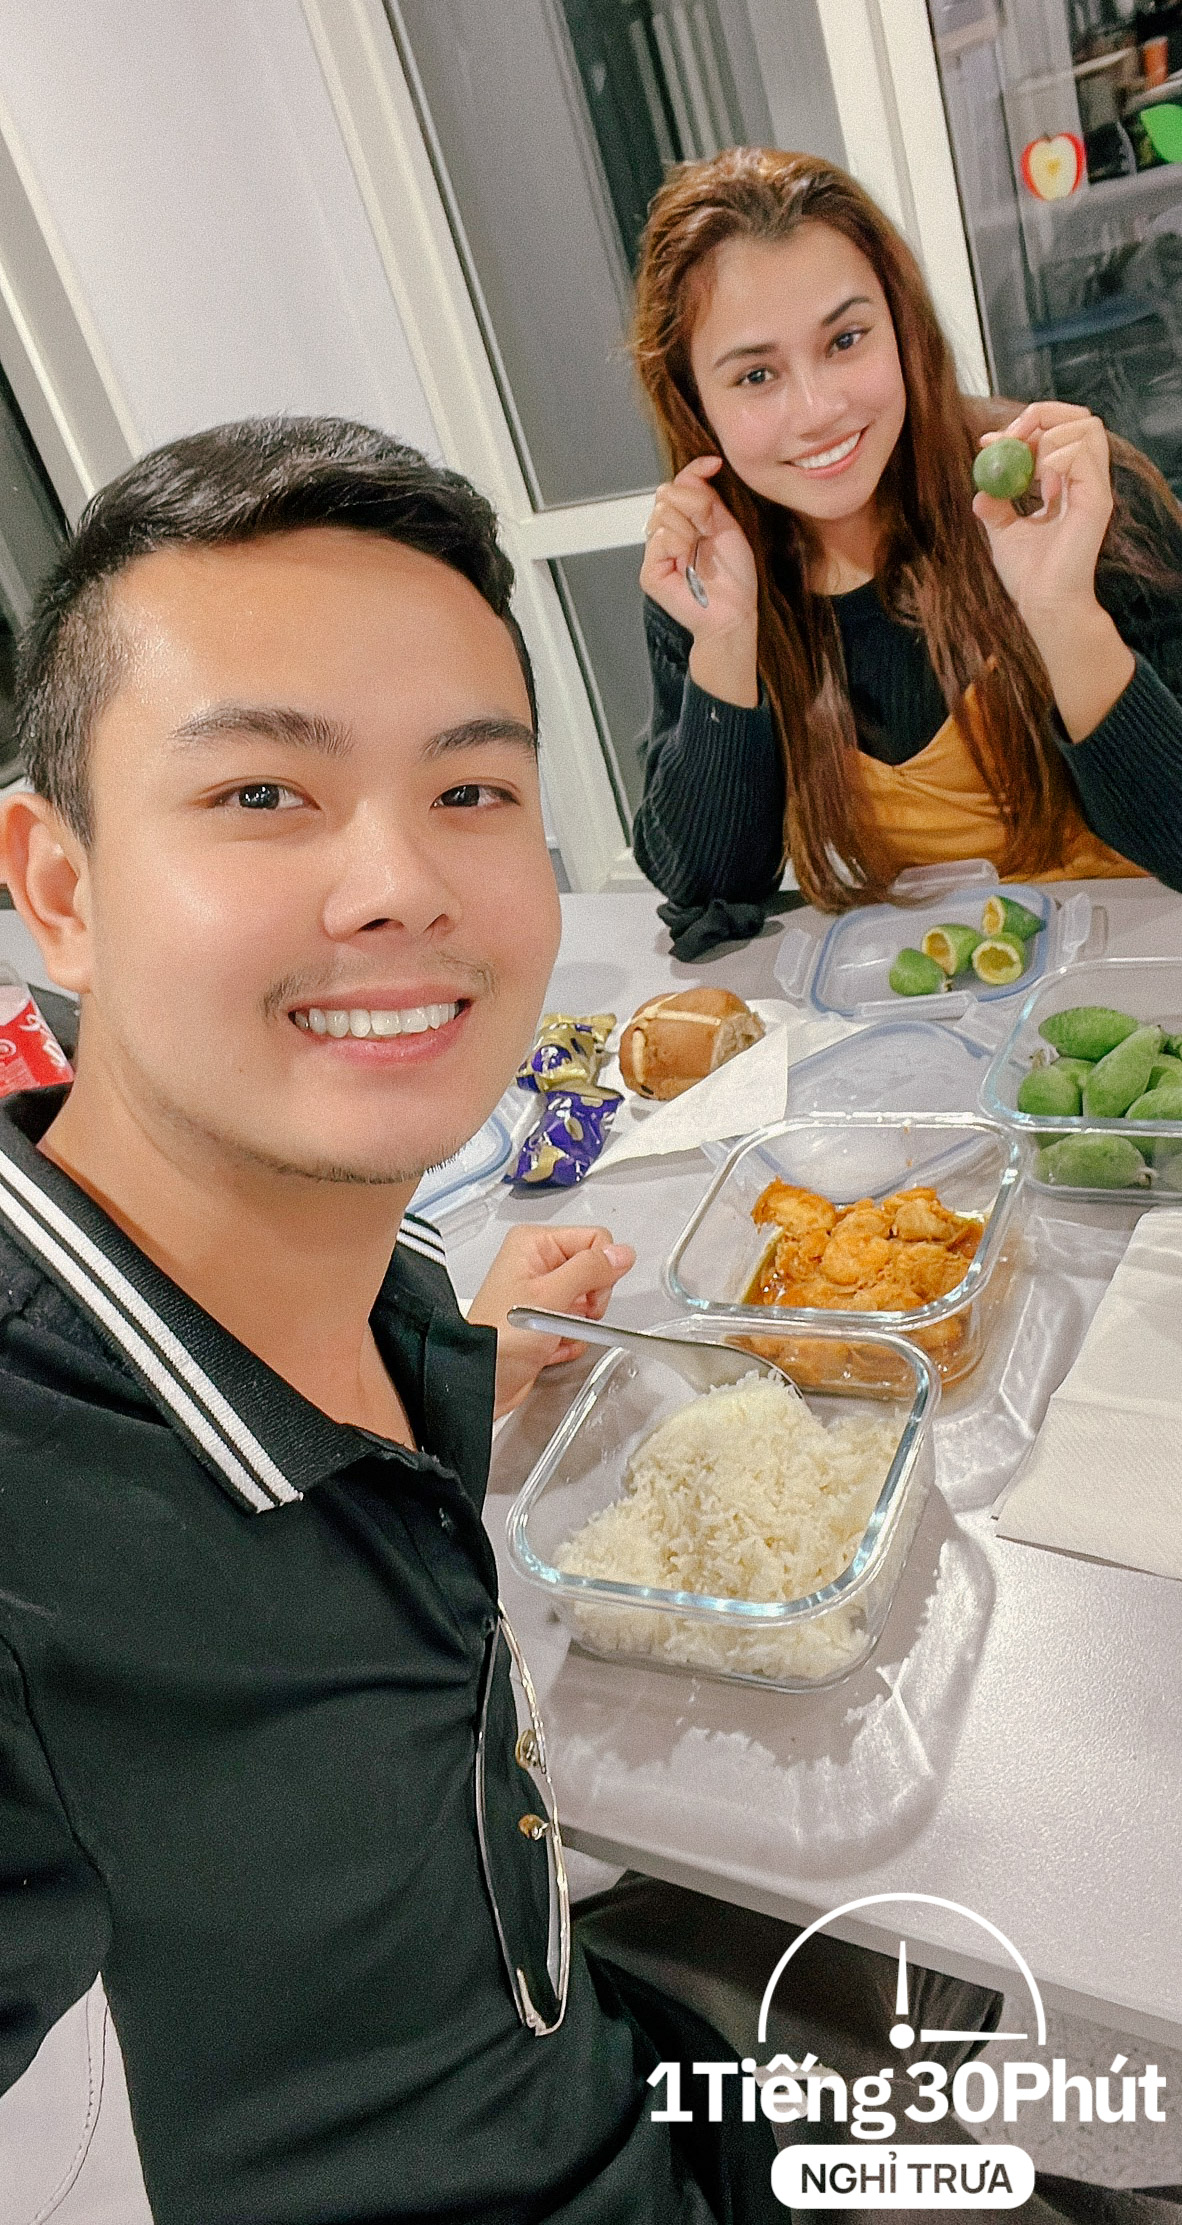 Nhân viên người Việt đi làm ở New Zealand với bữa trưa toàn các món ngon của nhiều quốc gia, có ý định nấu bún bò quê nhà tới góp vui - Ảnh 8.